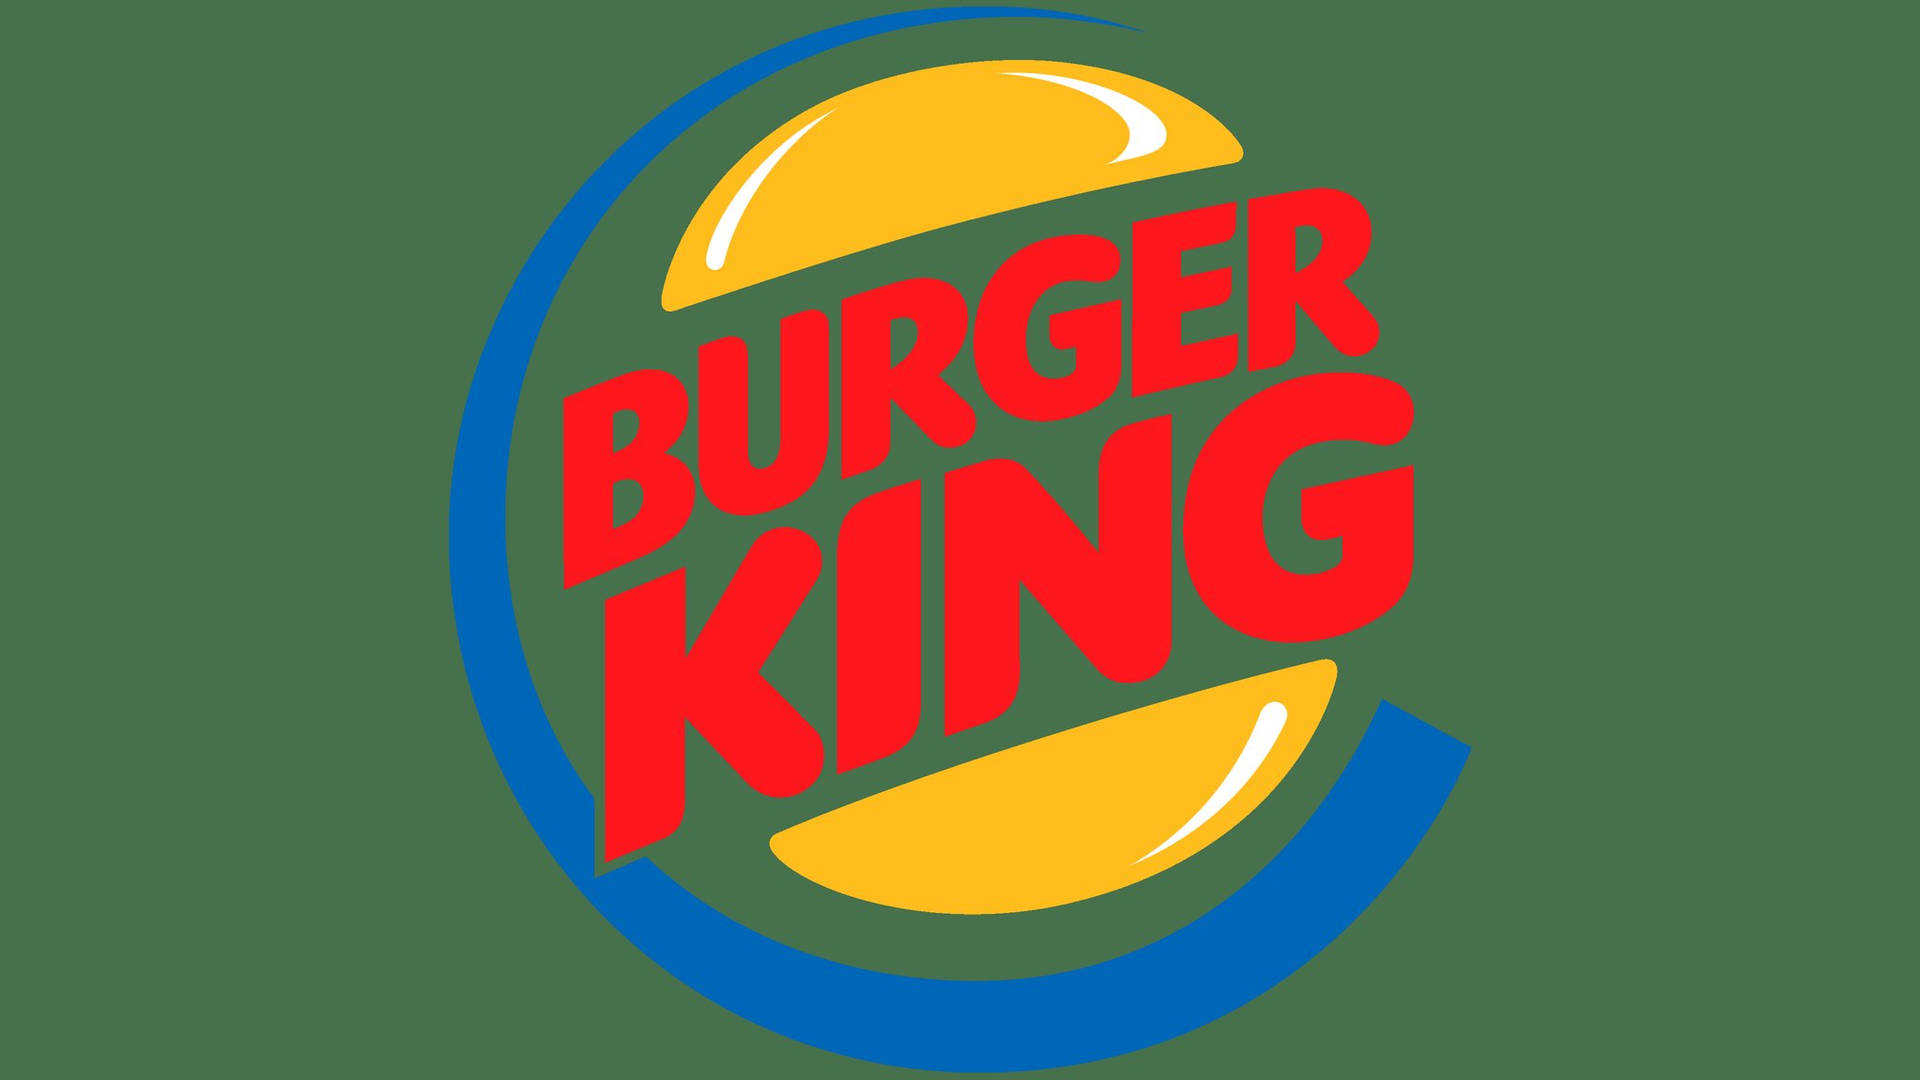 Burger-king-logo Wallpaper